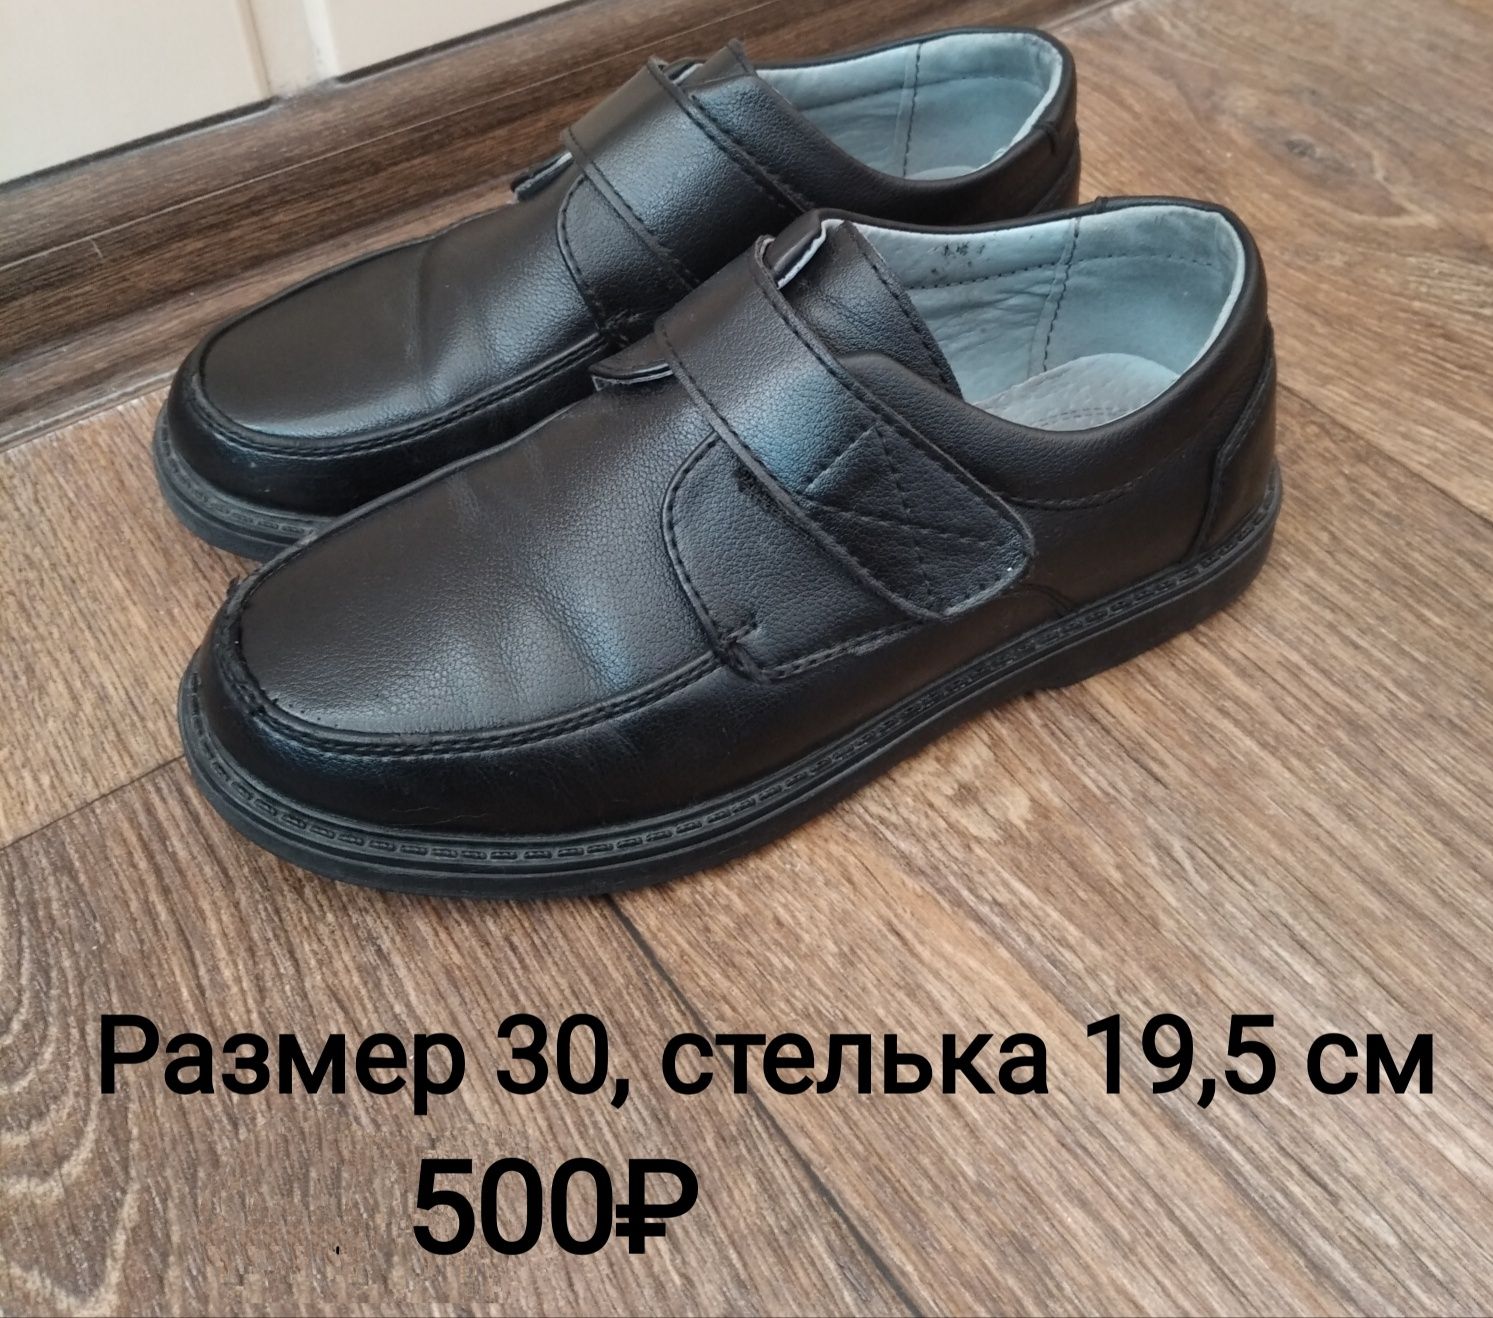 Продам детские ботинки, обувь, размер 28-35